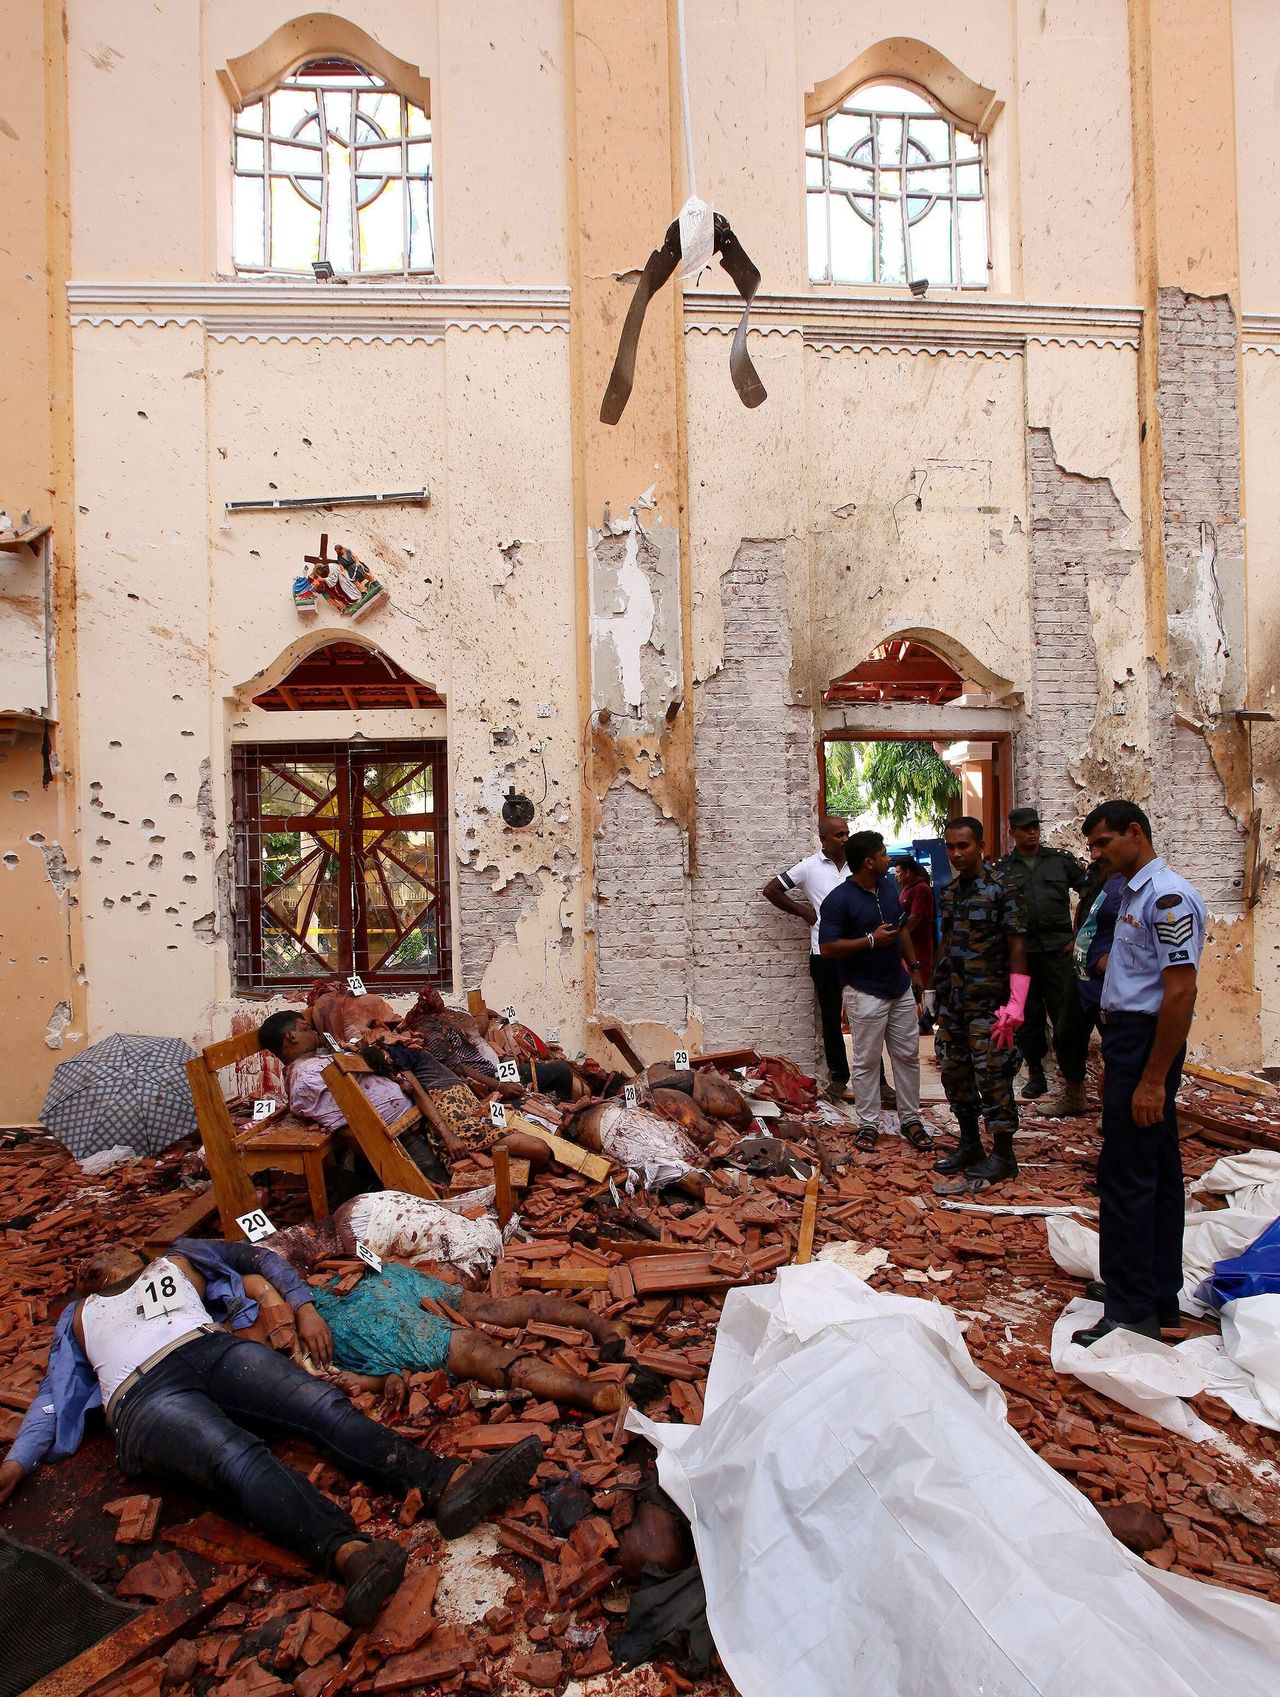 Αστυνομικοί σκέκονται δίπλα από νεκρούς μετά από έκρηξη βόμβας σε εκκλησία στη Σρι Λάνκα στις 21 Απριλίου 2019.